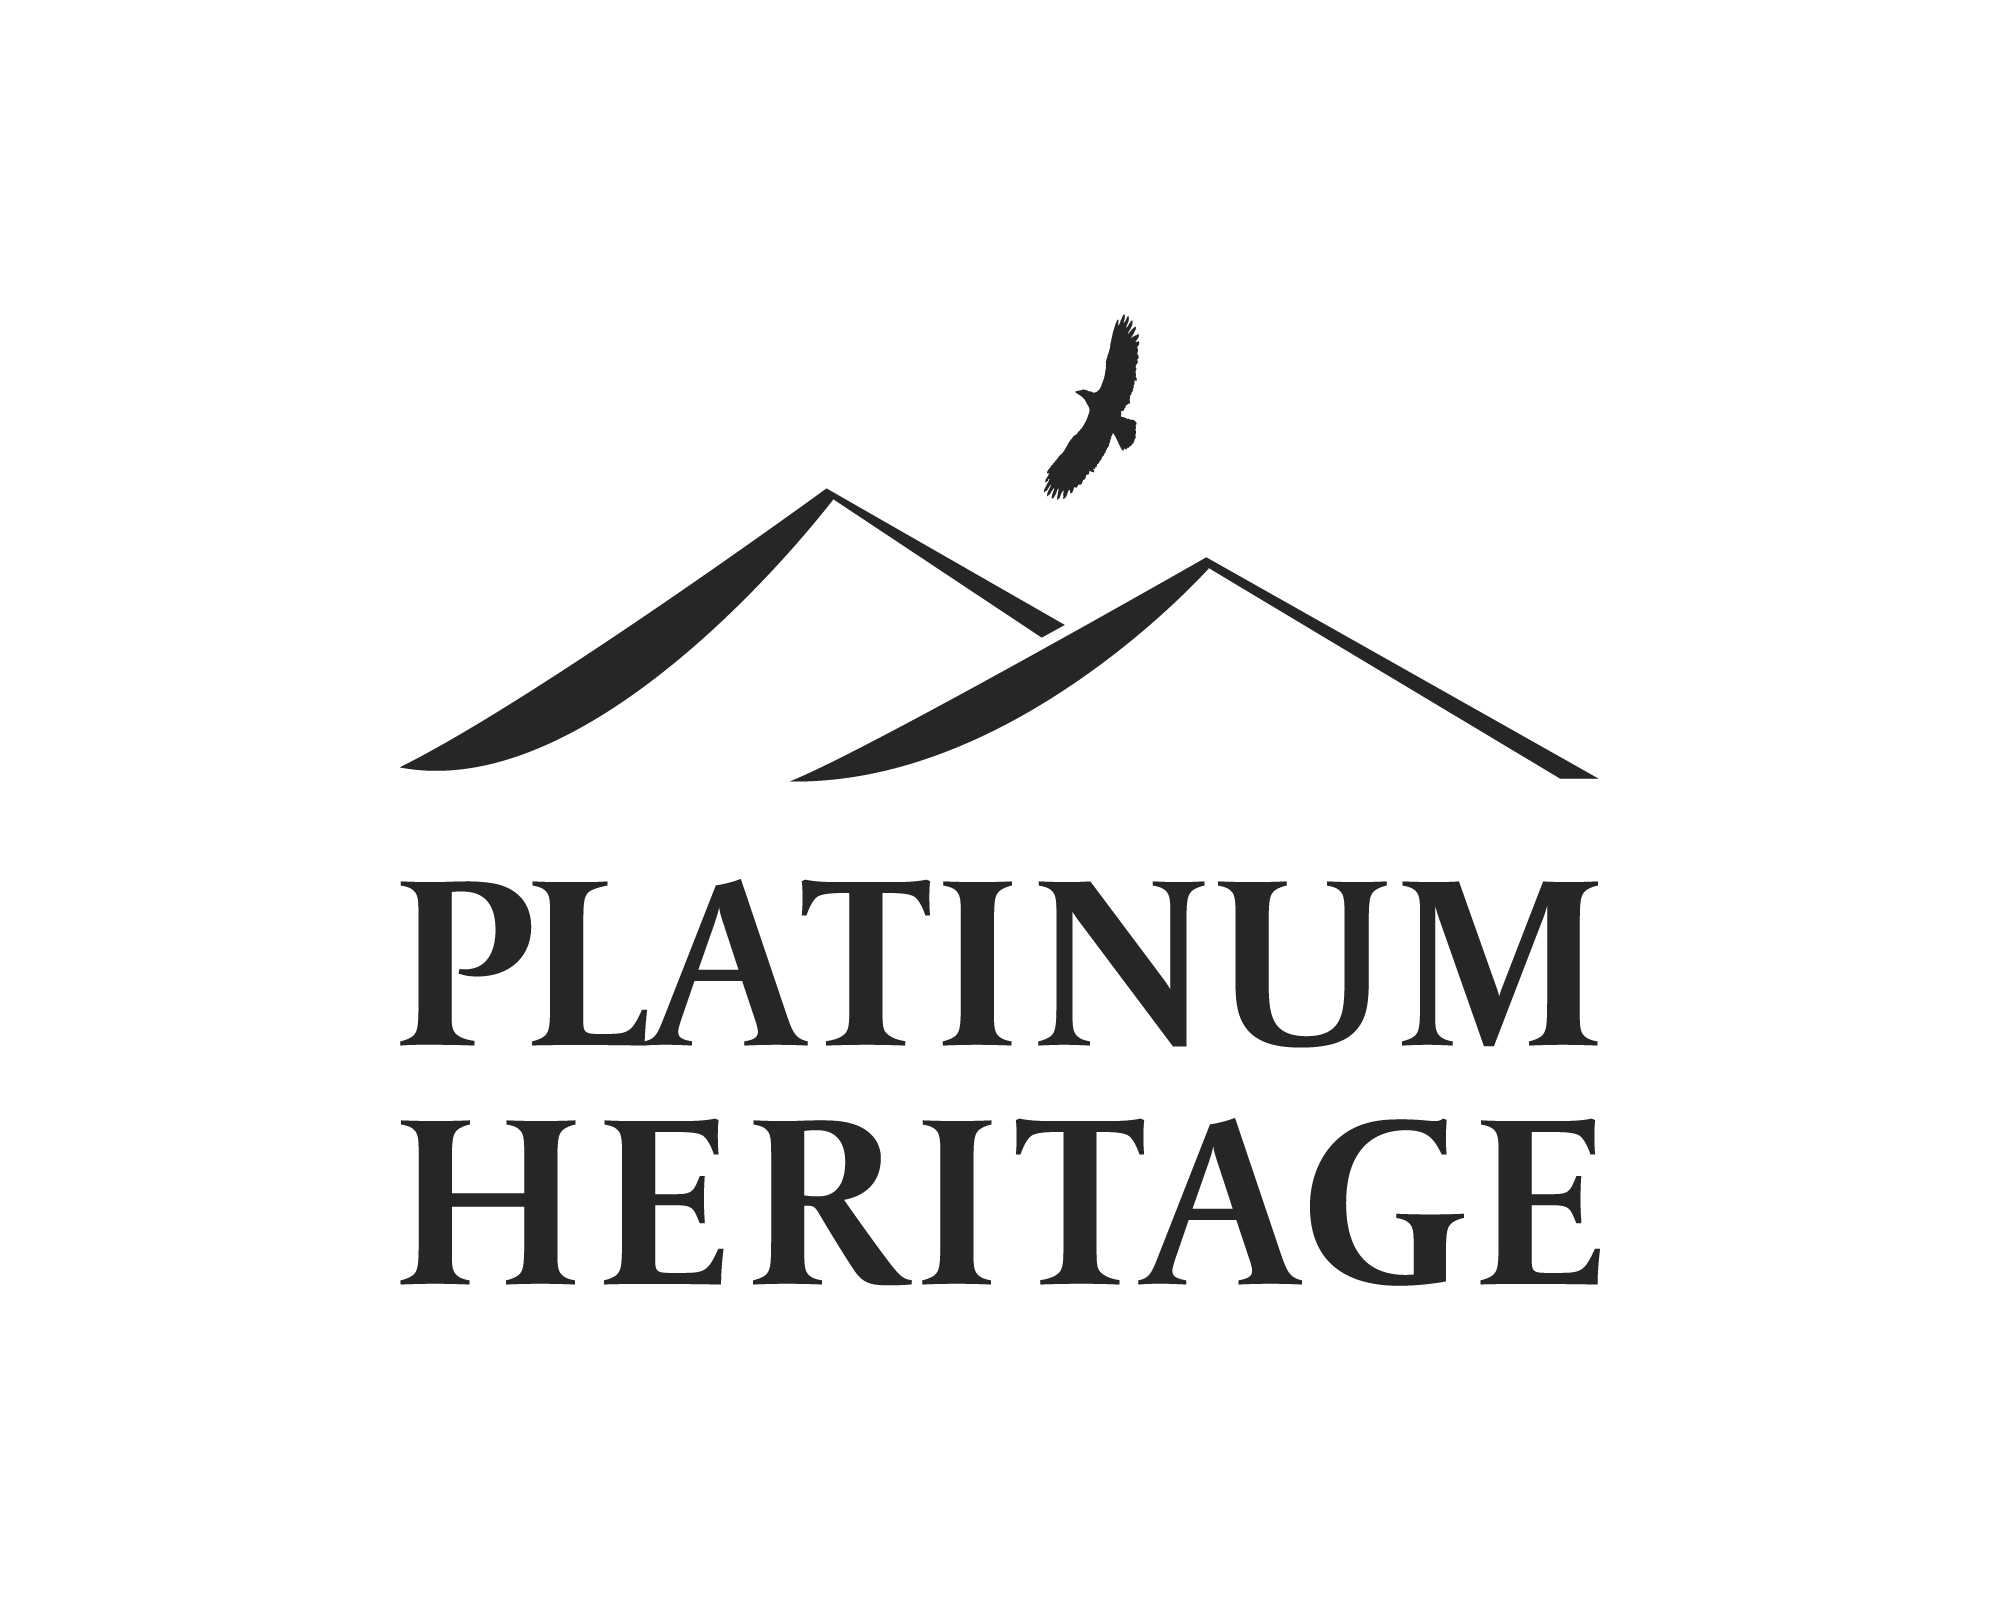 Platinum Heritage - Luxury Lifestyle Awards